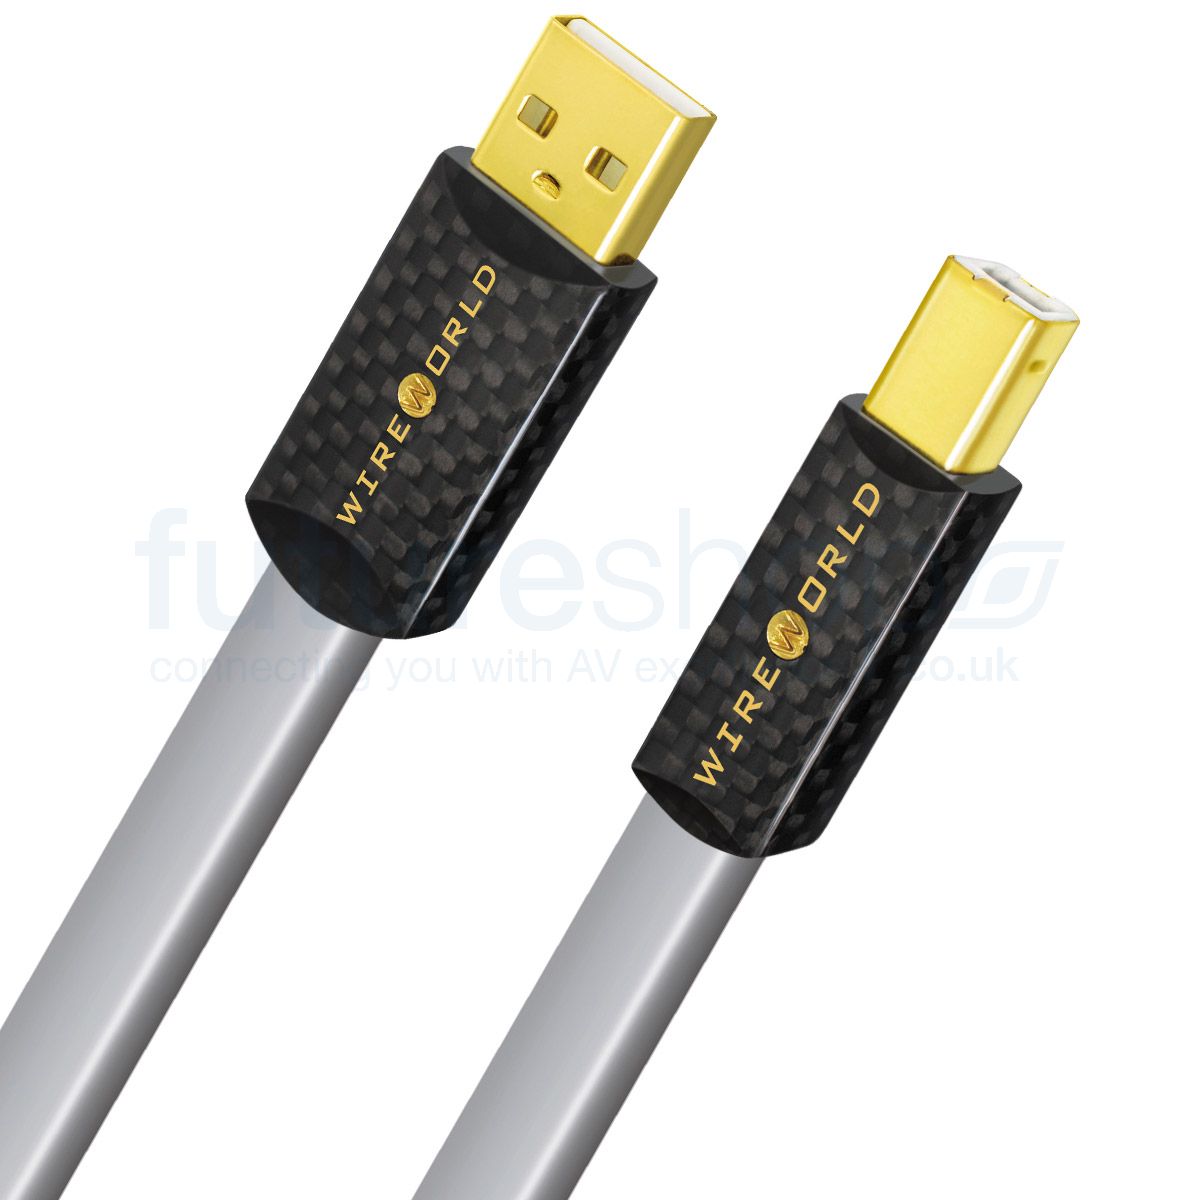 Wireworld 8 USB 2.0 A to B